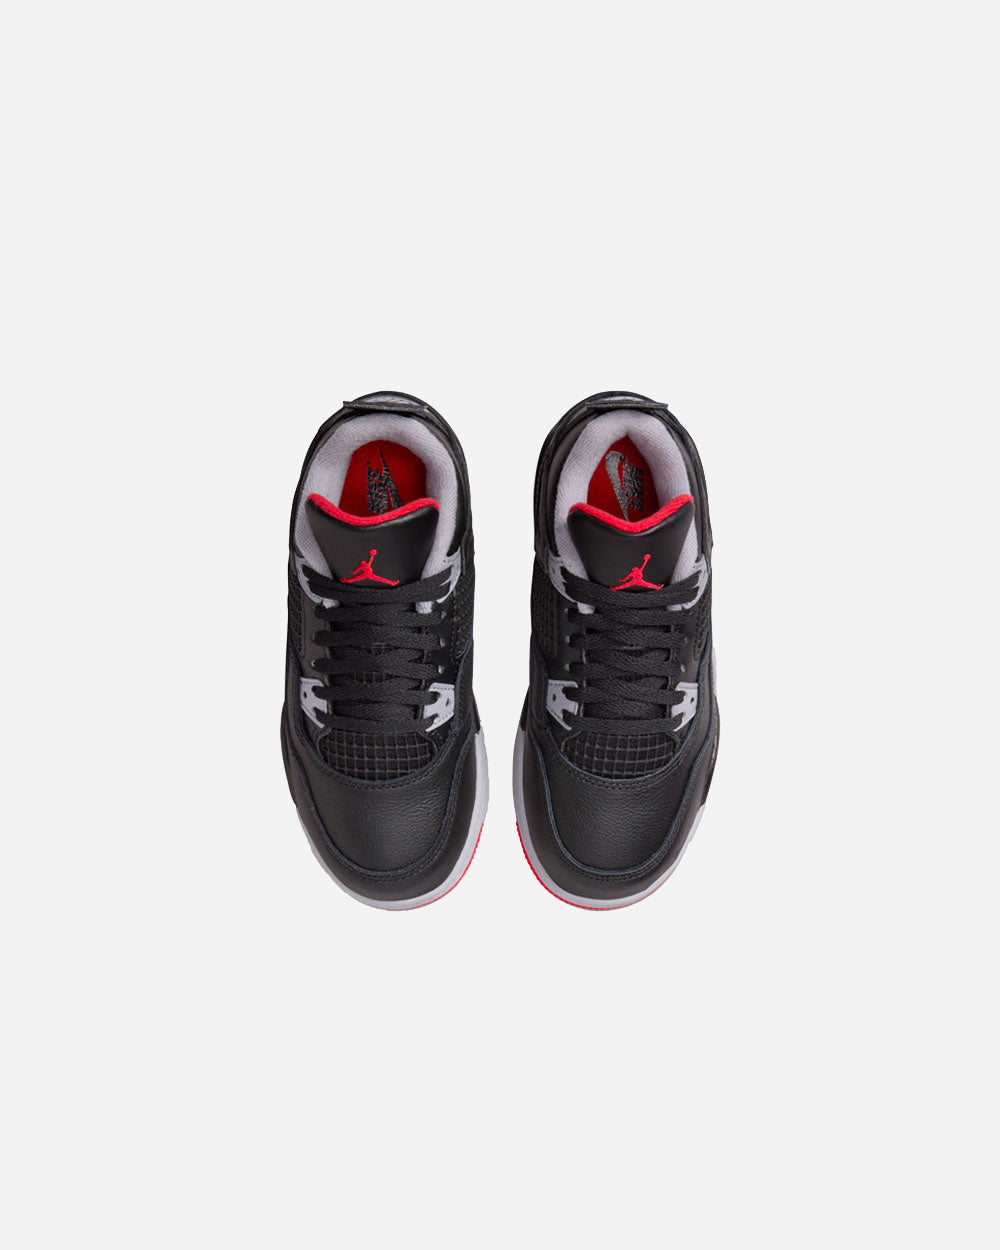 Air Jordan 4 Retro "Bred Reimagined" PS